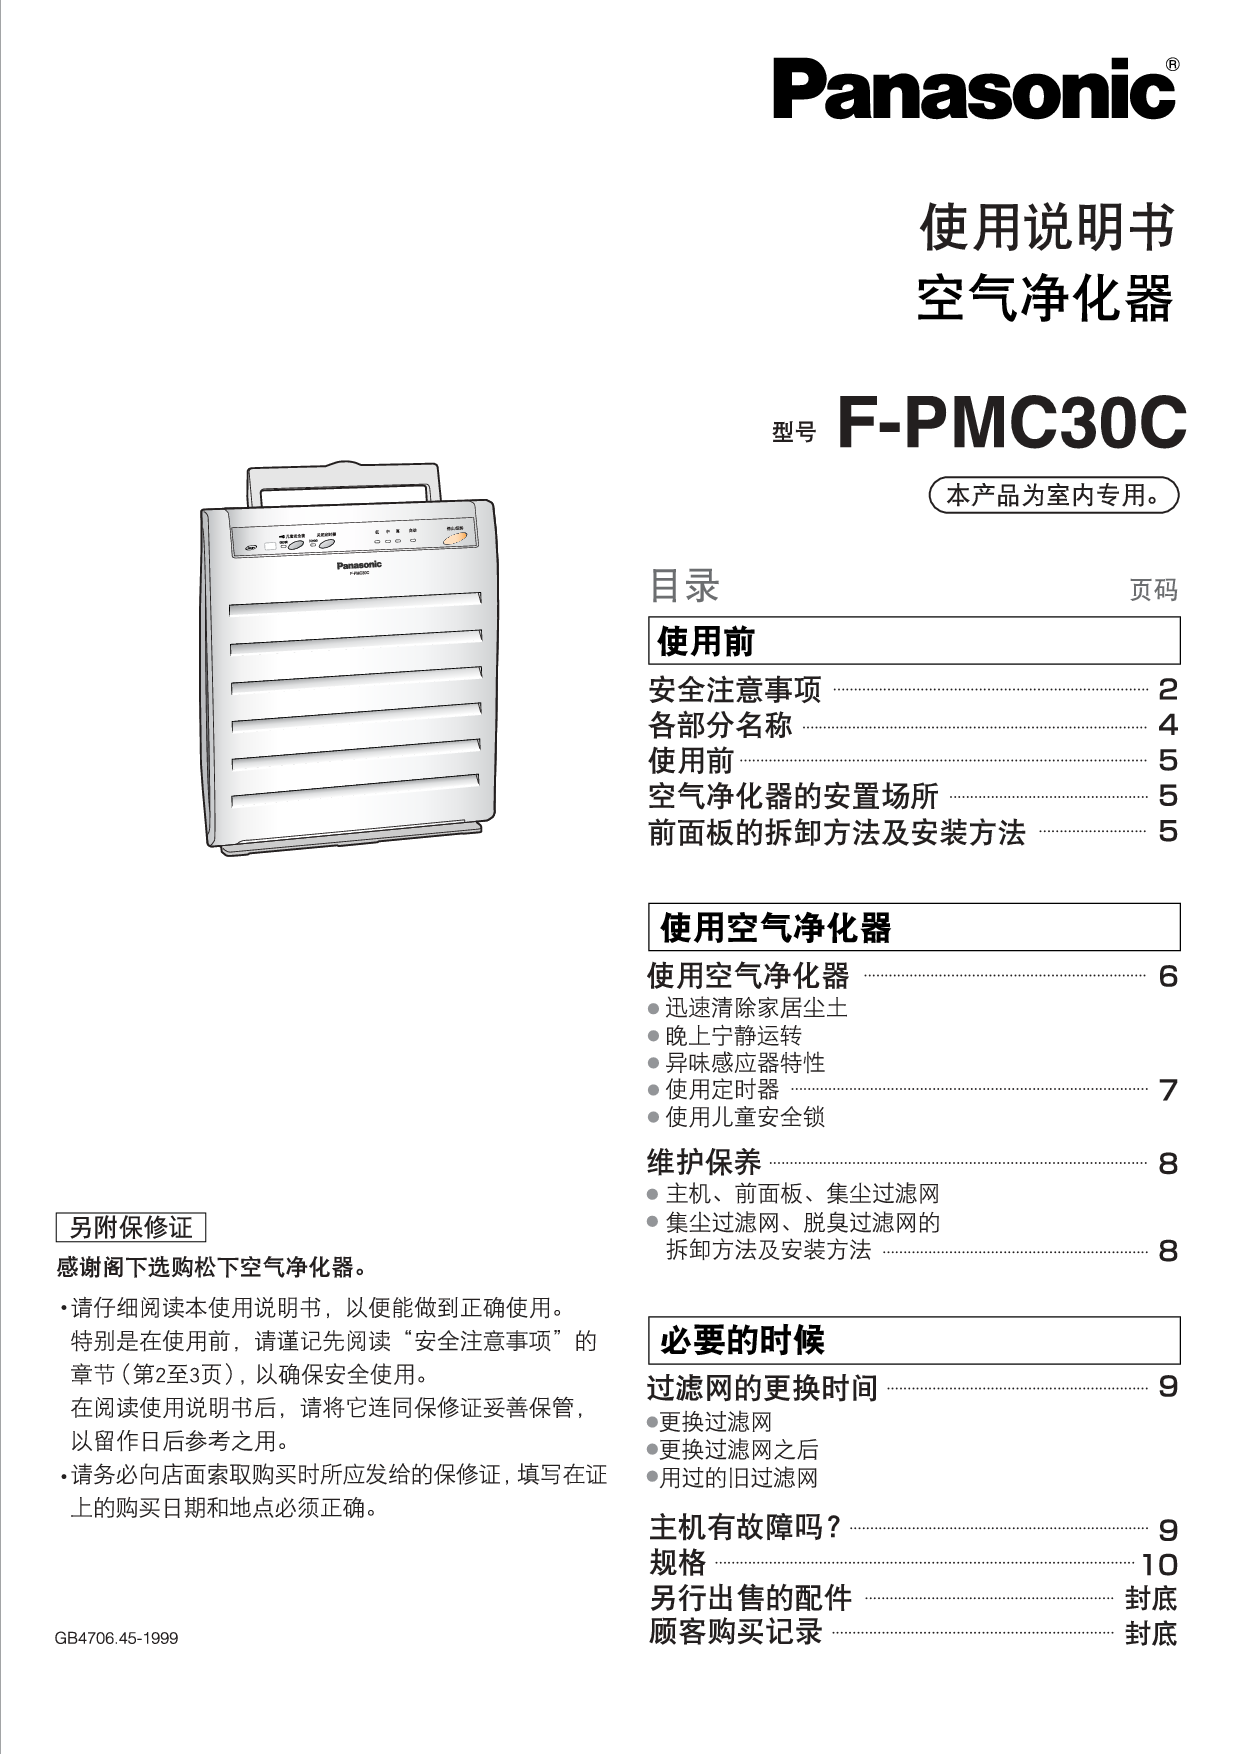 松下 Panasonic F-PMC30C 说明书 封面